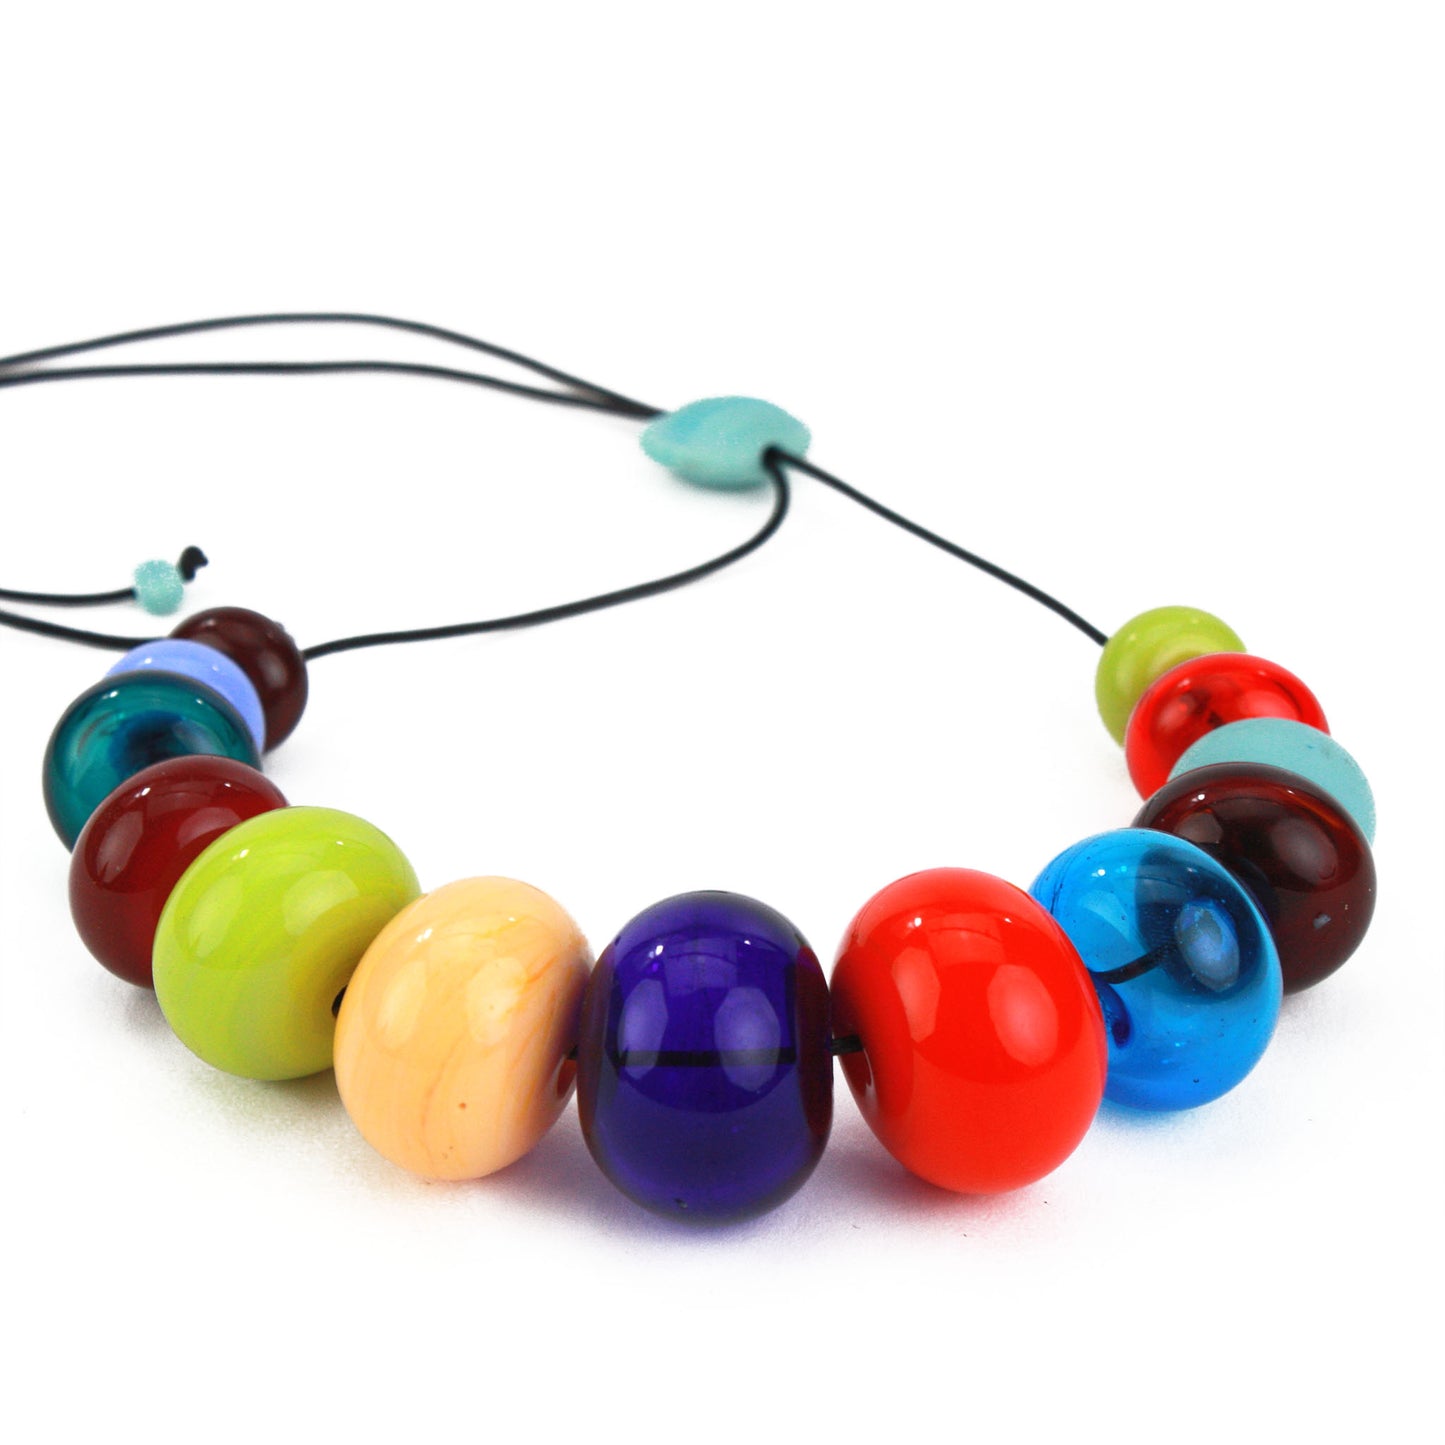 13 bead bubble necklace - multi-colored